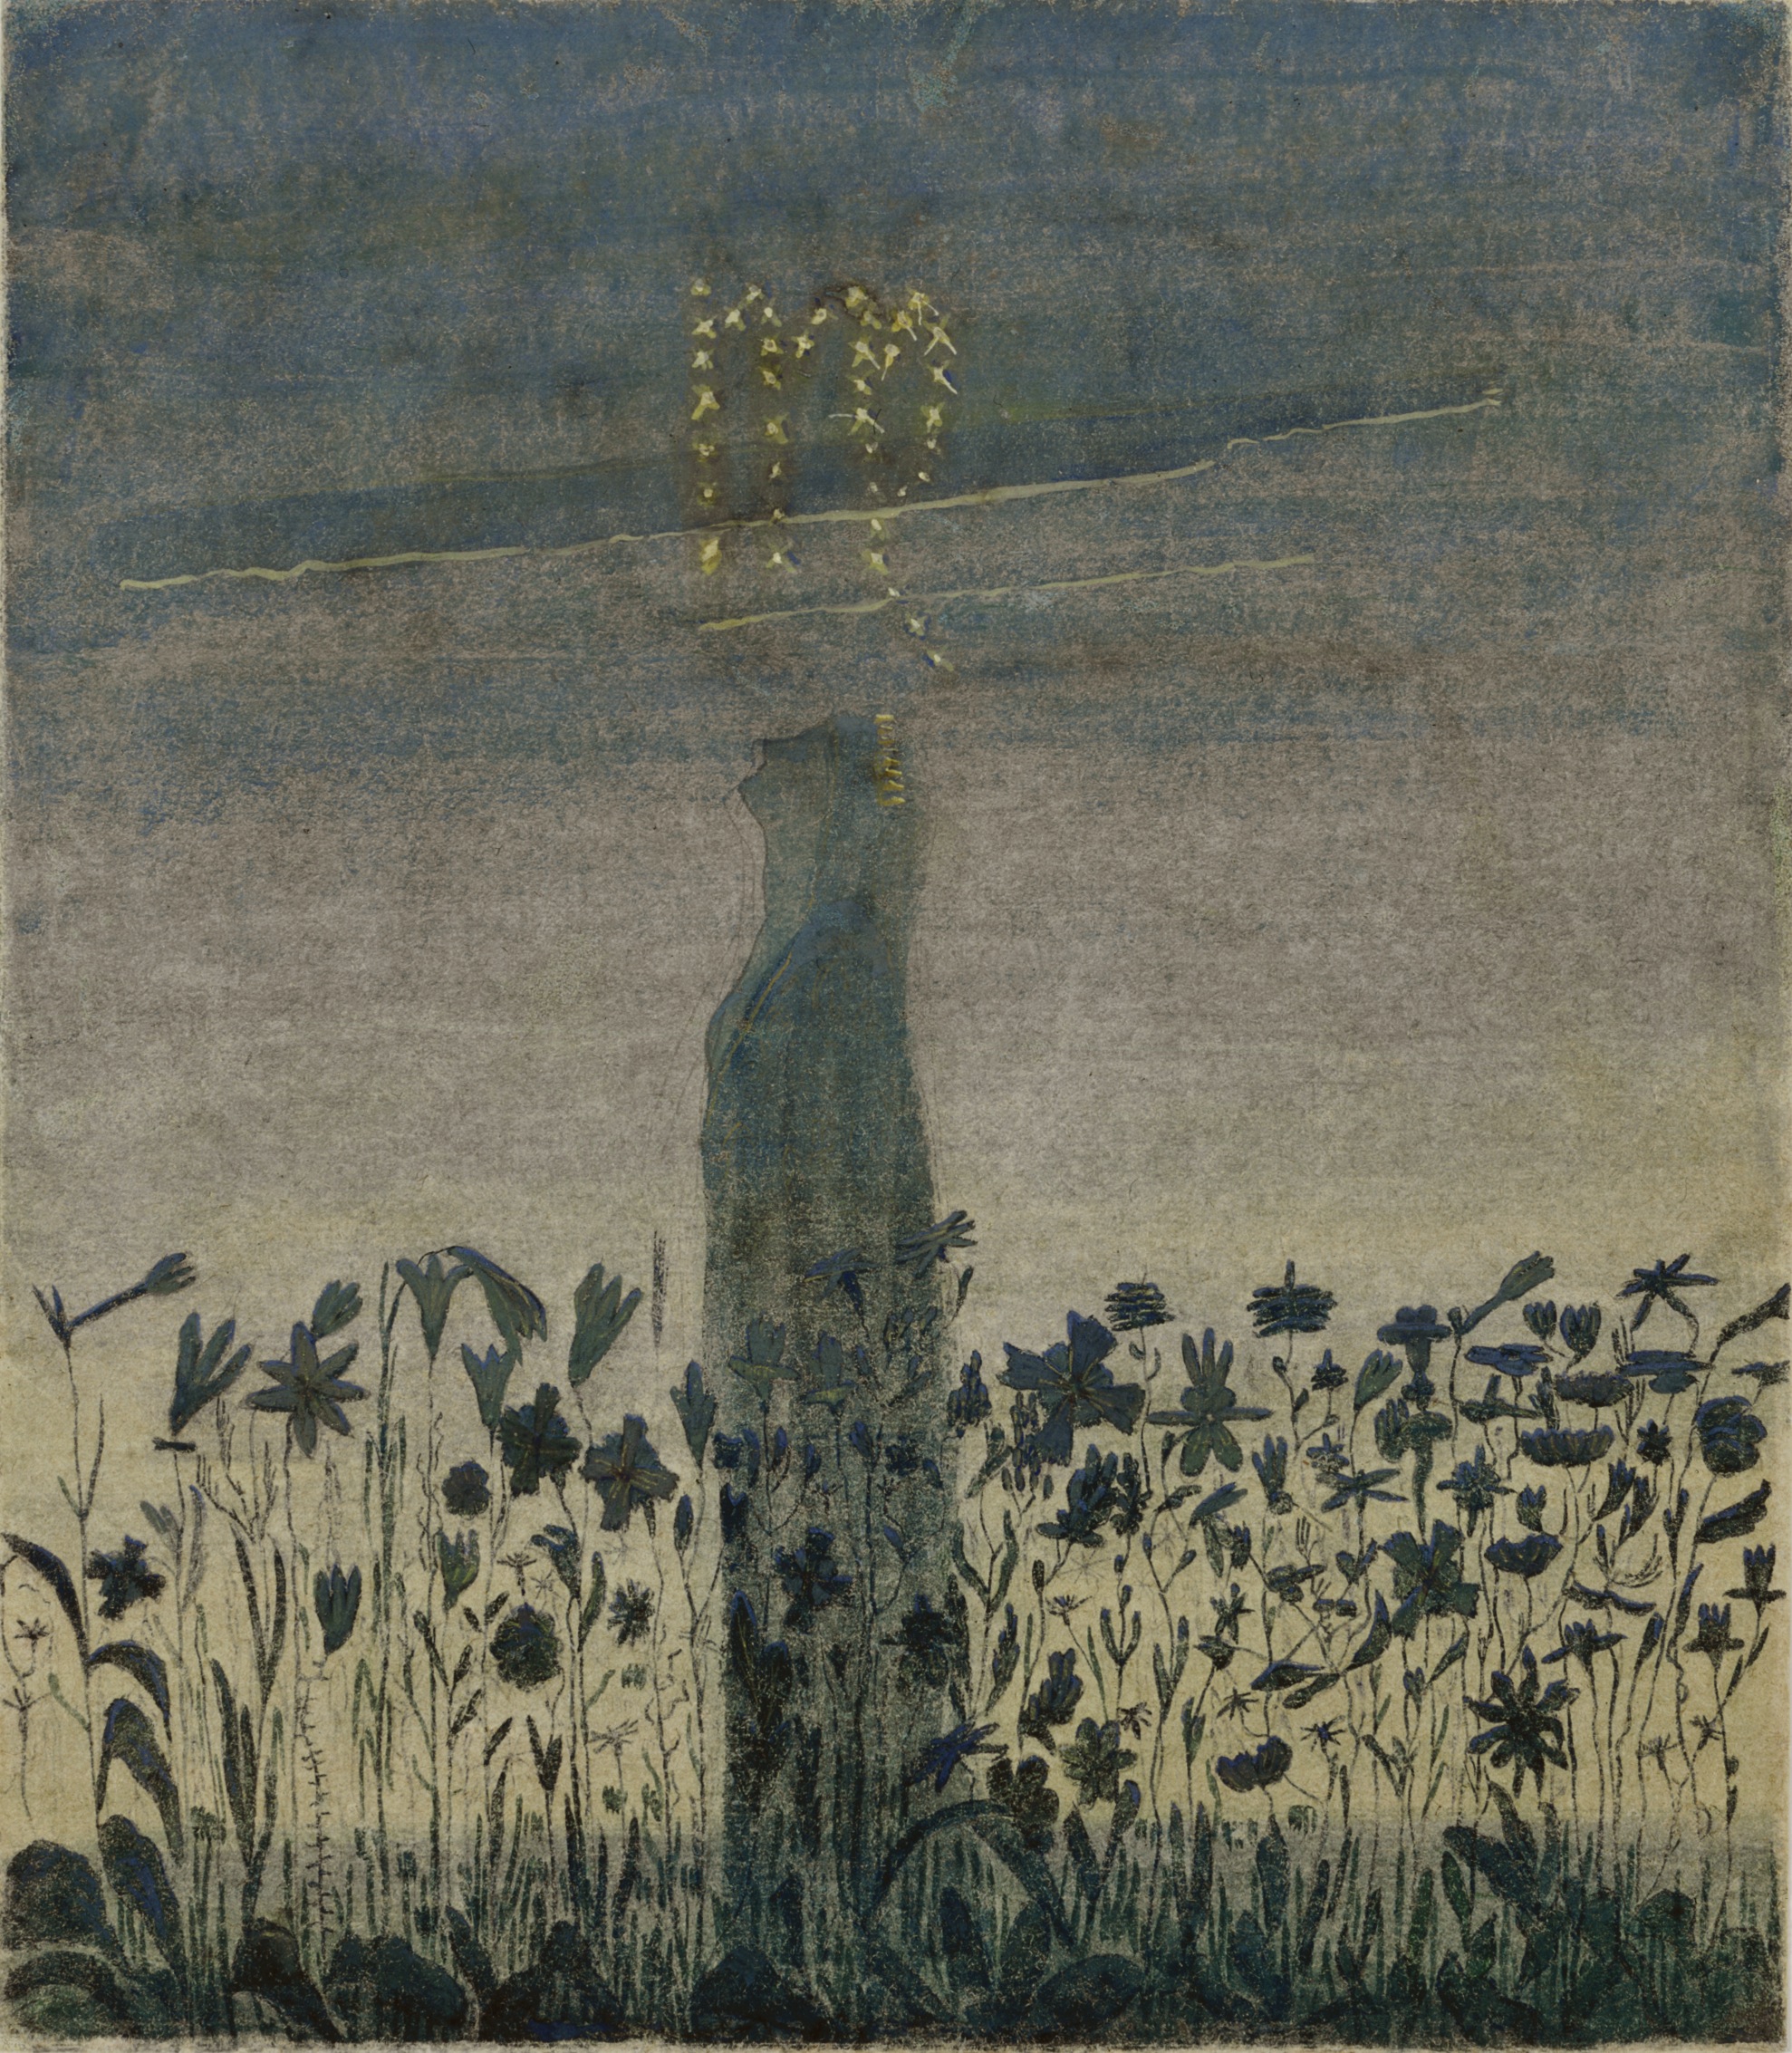 乙女座を通過する太陽 by Mikalojus Konstantinas Čiurlionis - 1906年 - 35.6 x 31.3 cm 